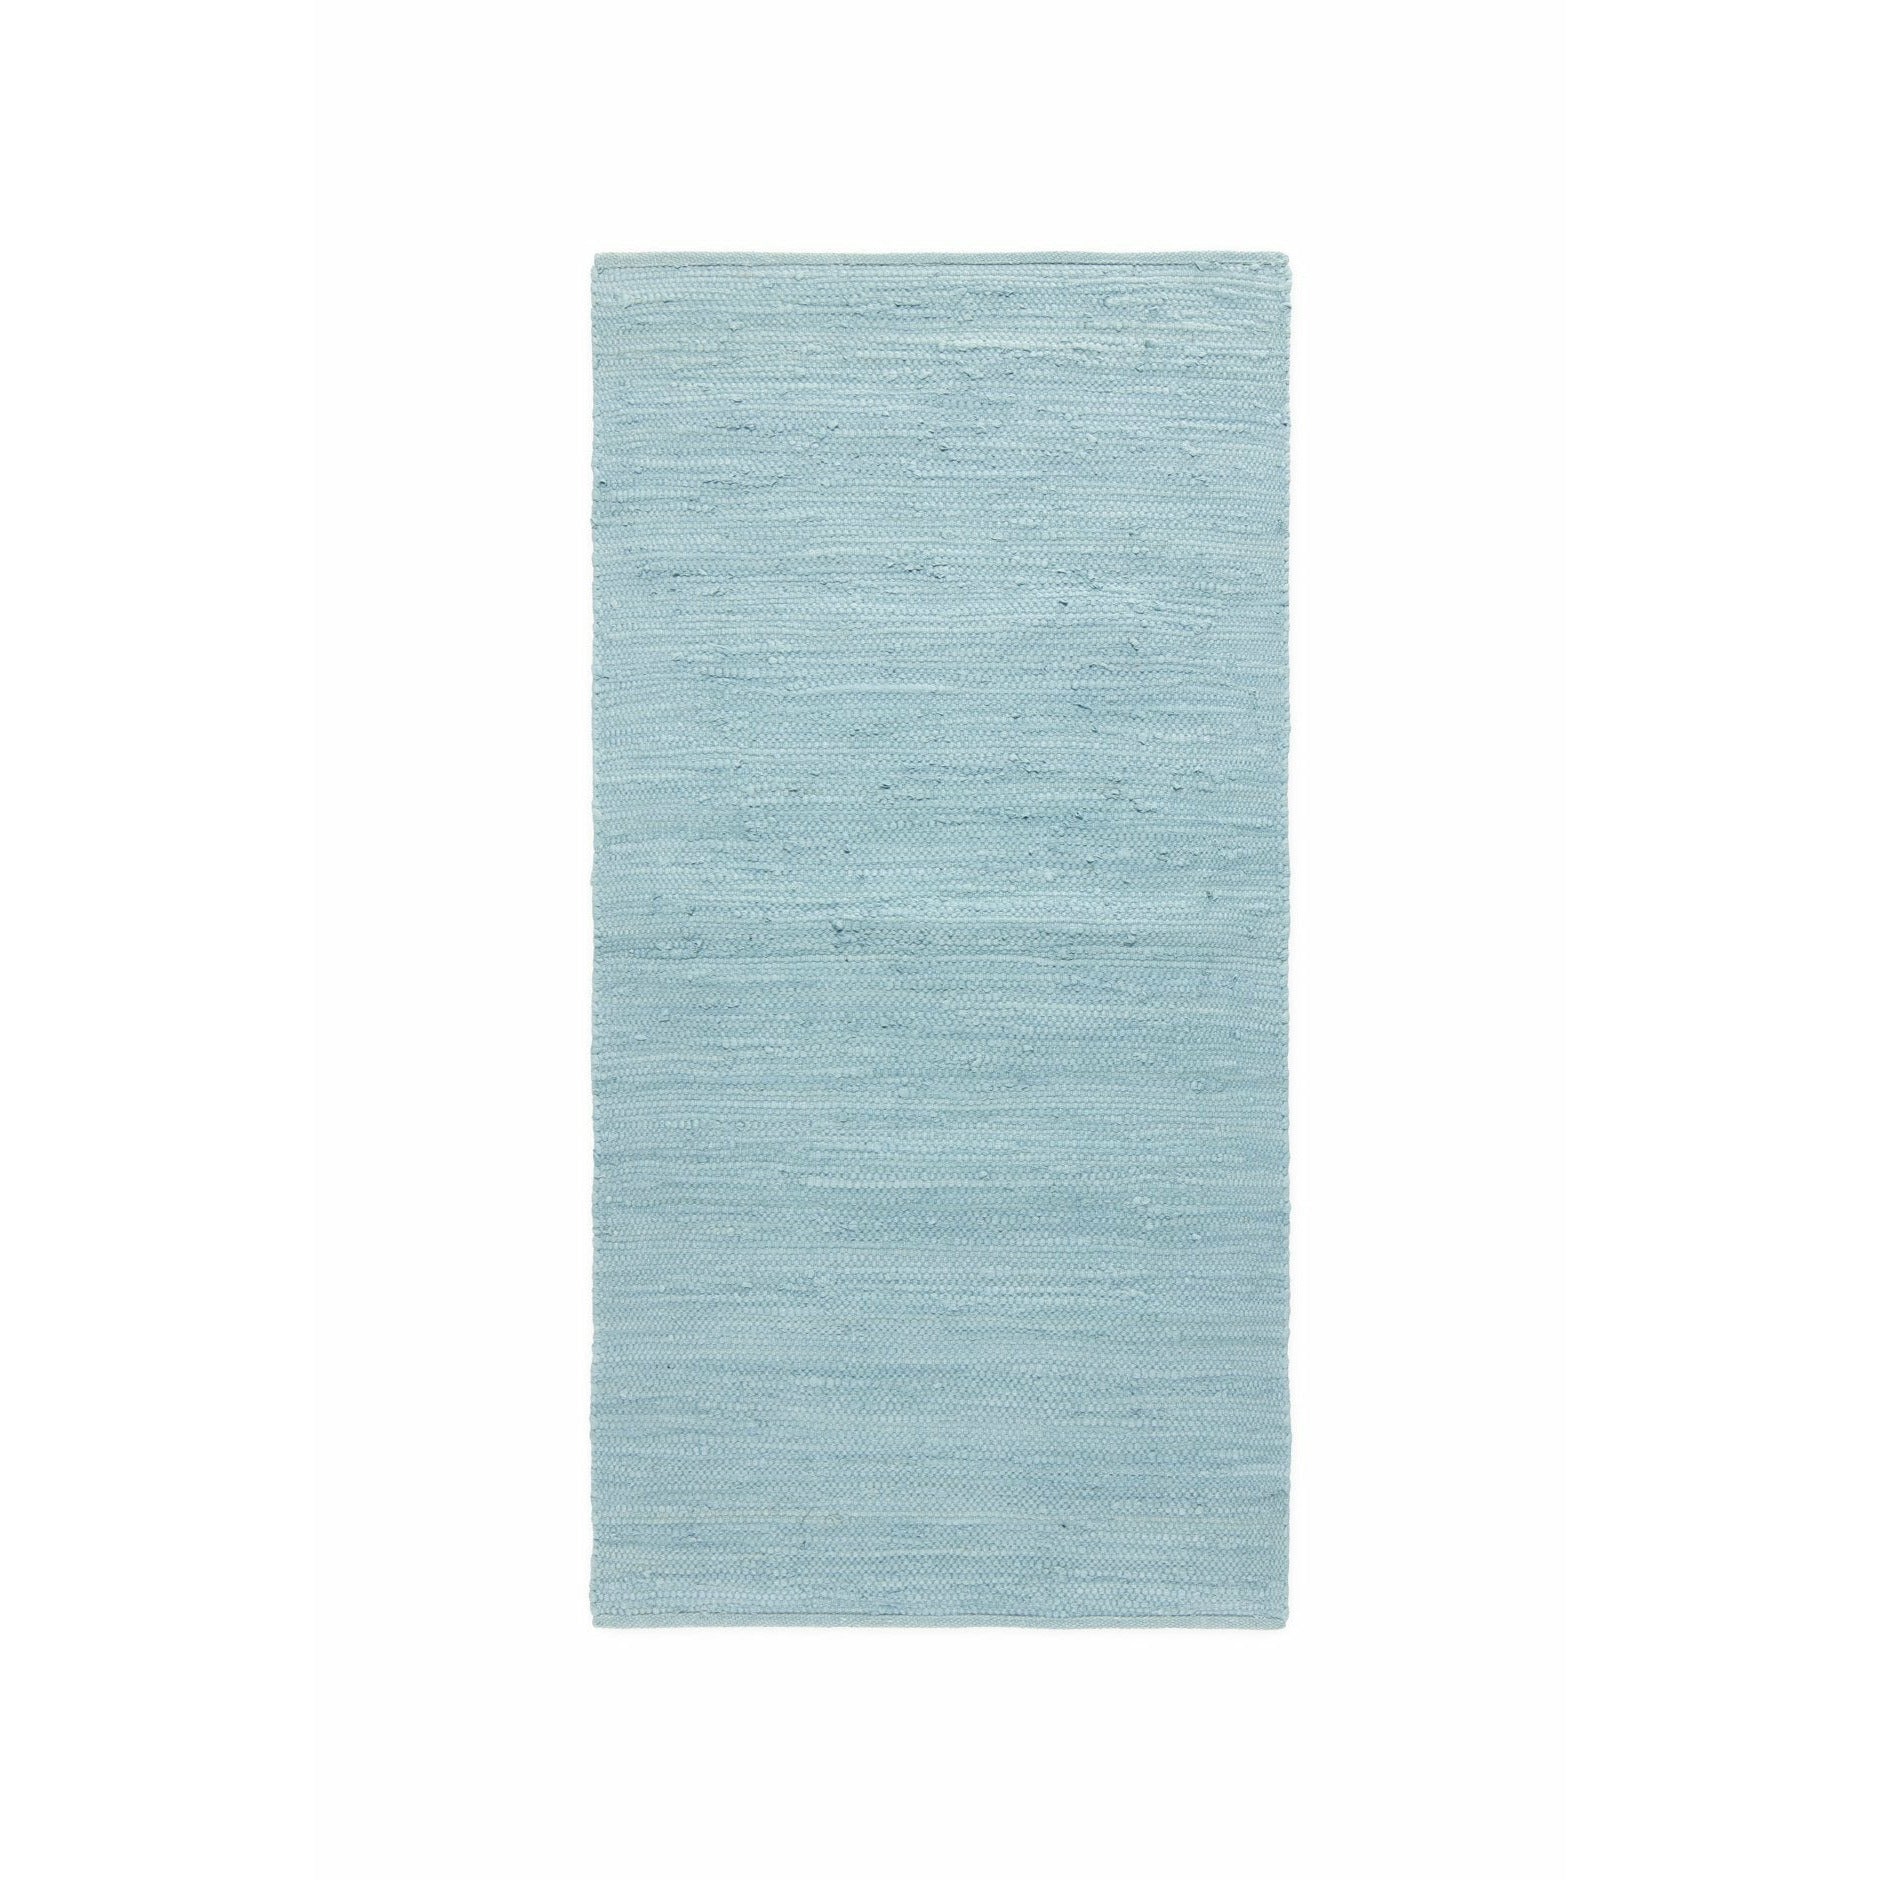 Rug Solid Cotton Rug Daydream Blue, 170 x 240 cm